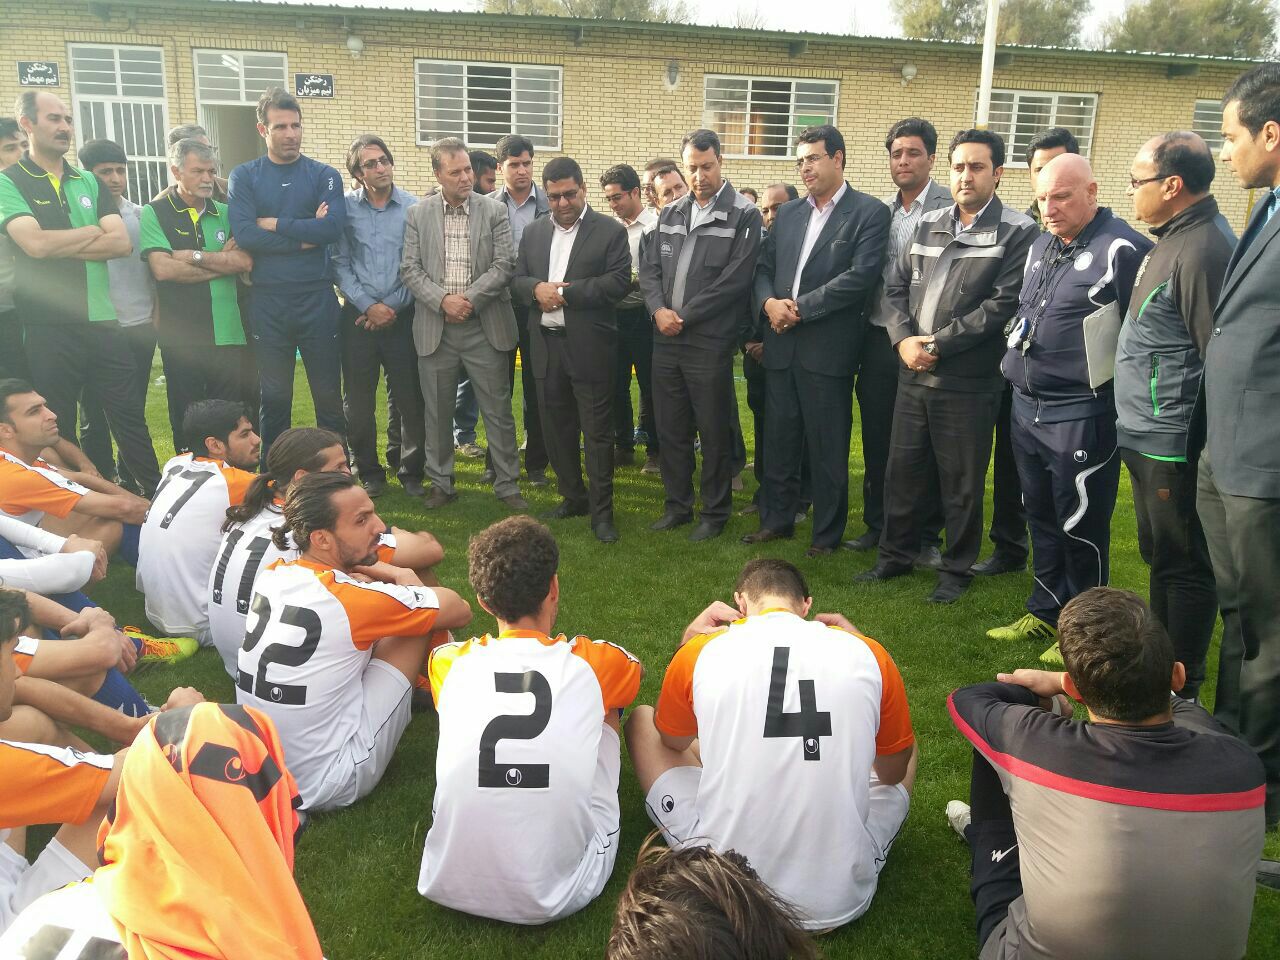 فرماندار سیرجان به منظور حمایت از تیم فوتبال گل گهر در تمرین این تیم حضور یافت